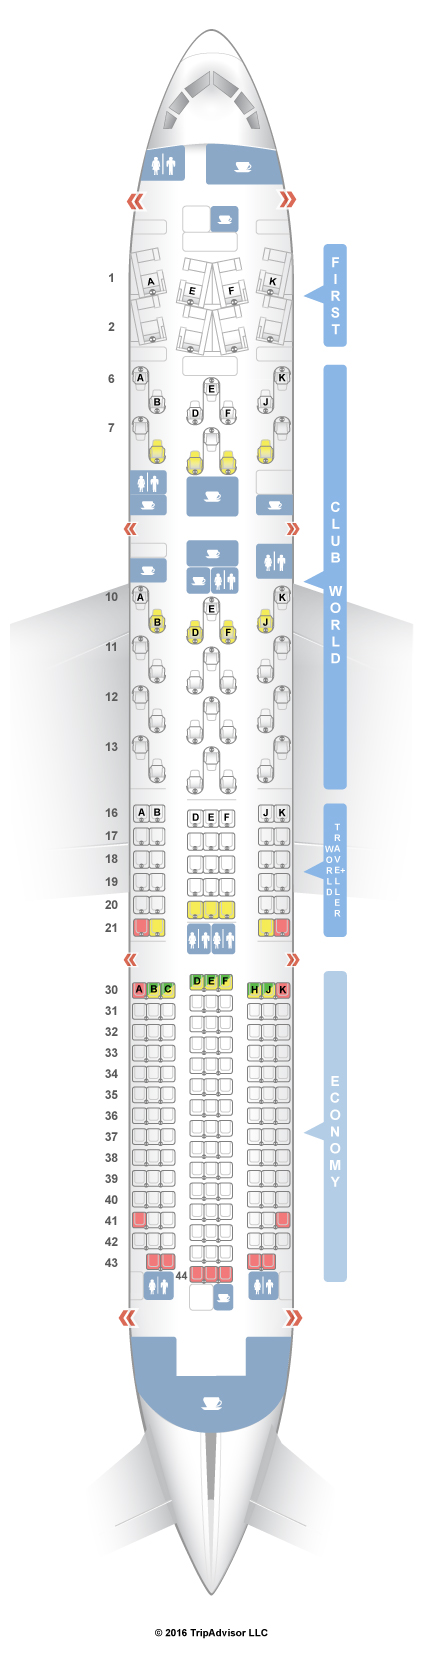 Boeing 744 seating plan